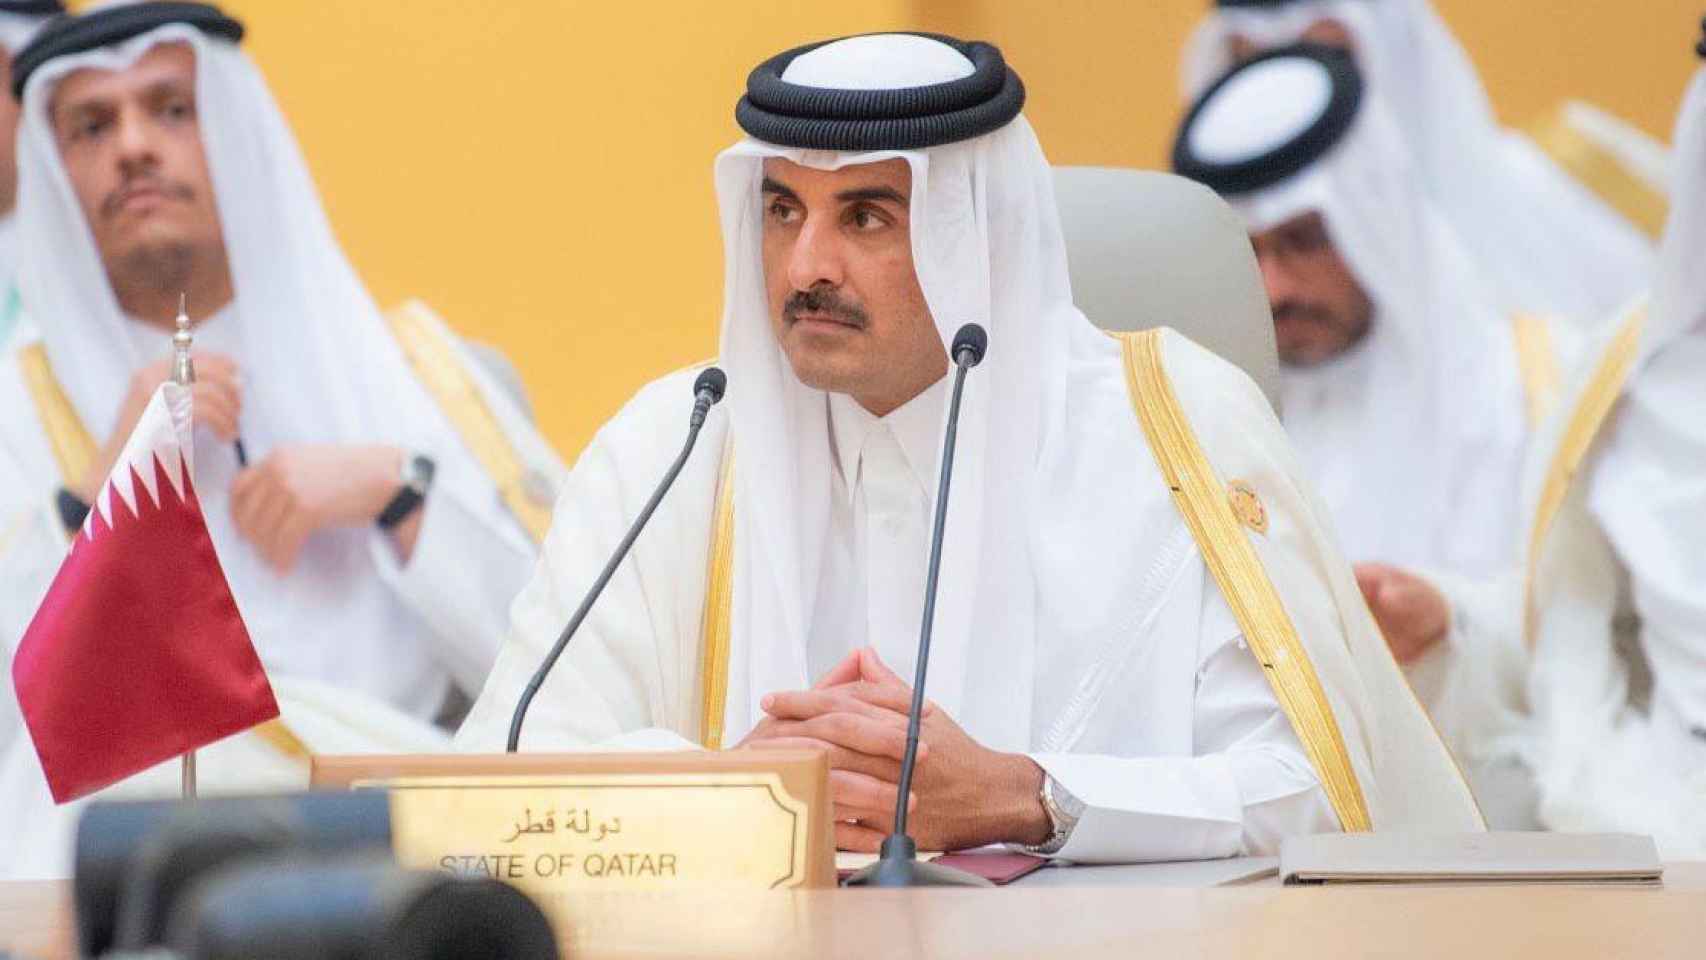 Sheikh Tamim bin Hamad Al Thani, Emir de Qatar, en un acto en Arabia Saudí